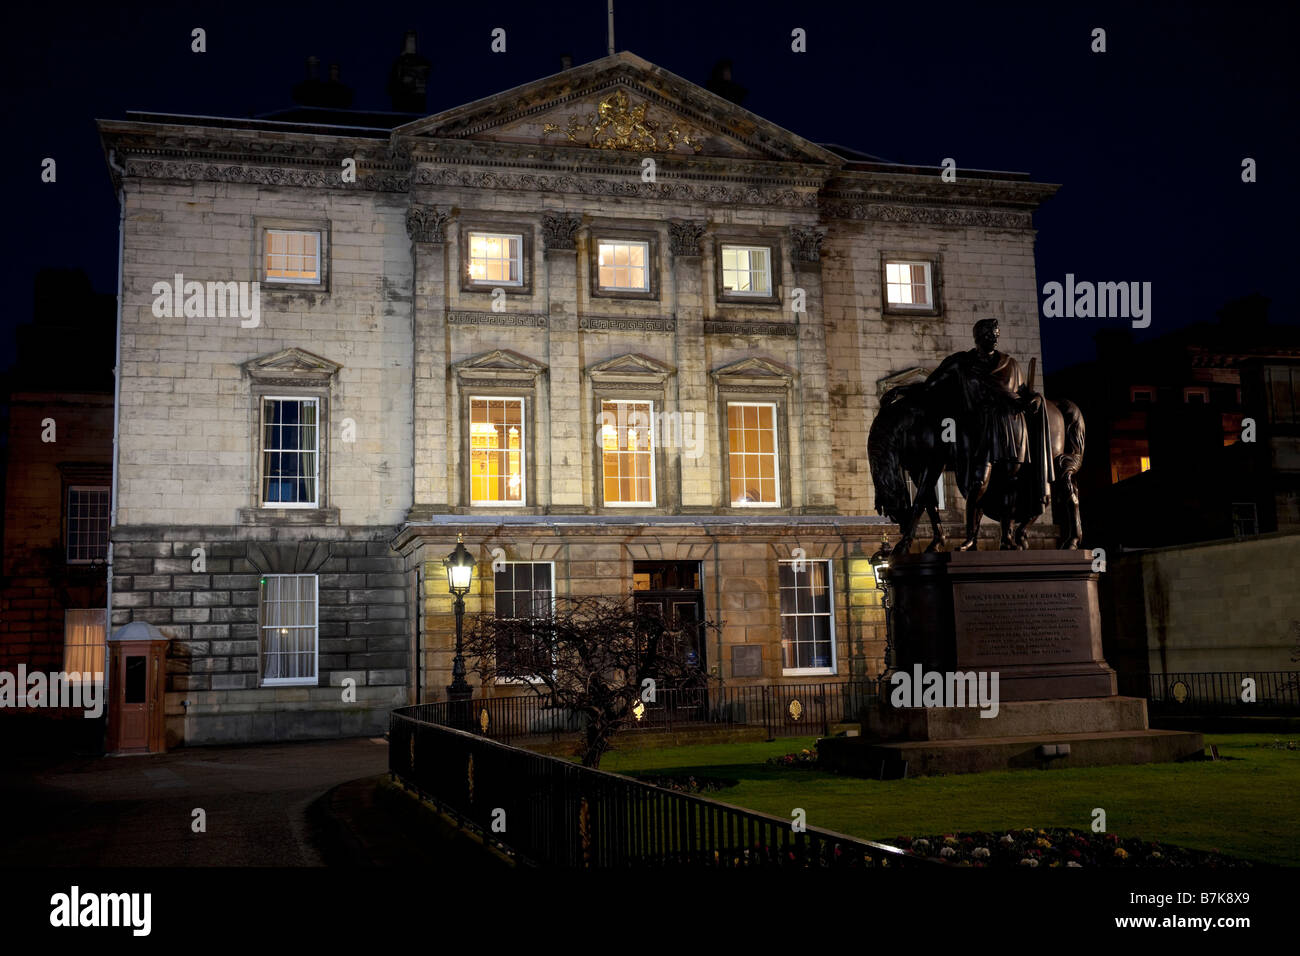 Siège de la Royal Bank of Scotland, St Andrew Square, Édimbourg, Écosse, Royaume-Uni, Europe Banque D'Images